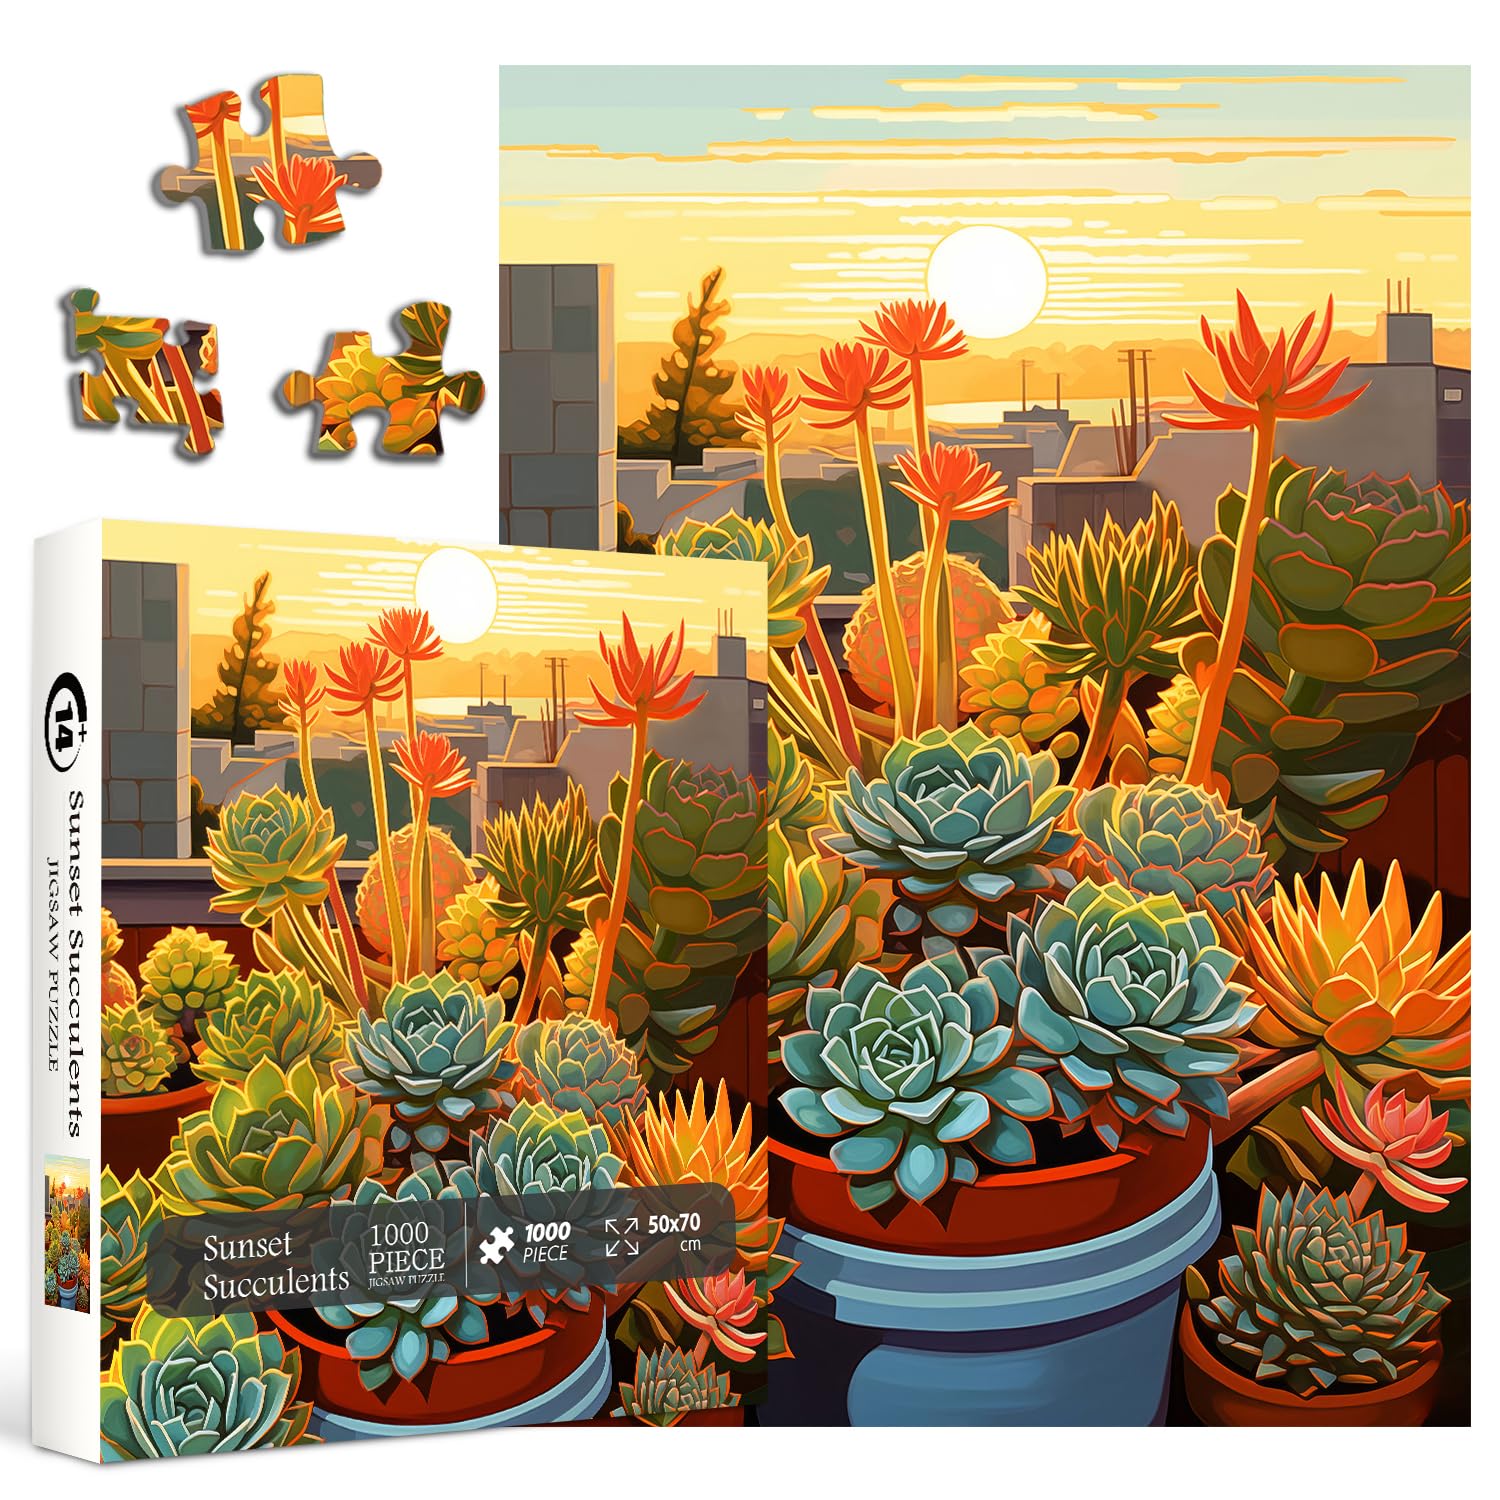 Sunset Succulents Jigsaw Puzzle 1000 Pieces